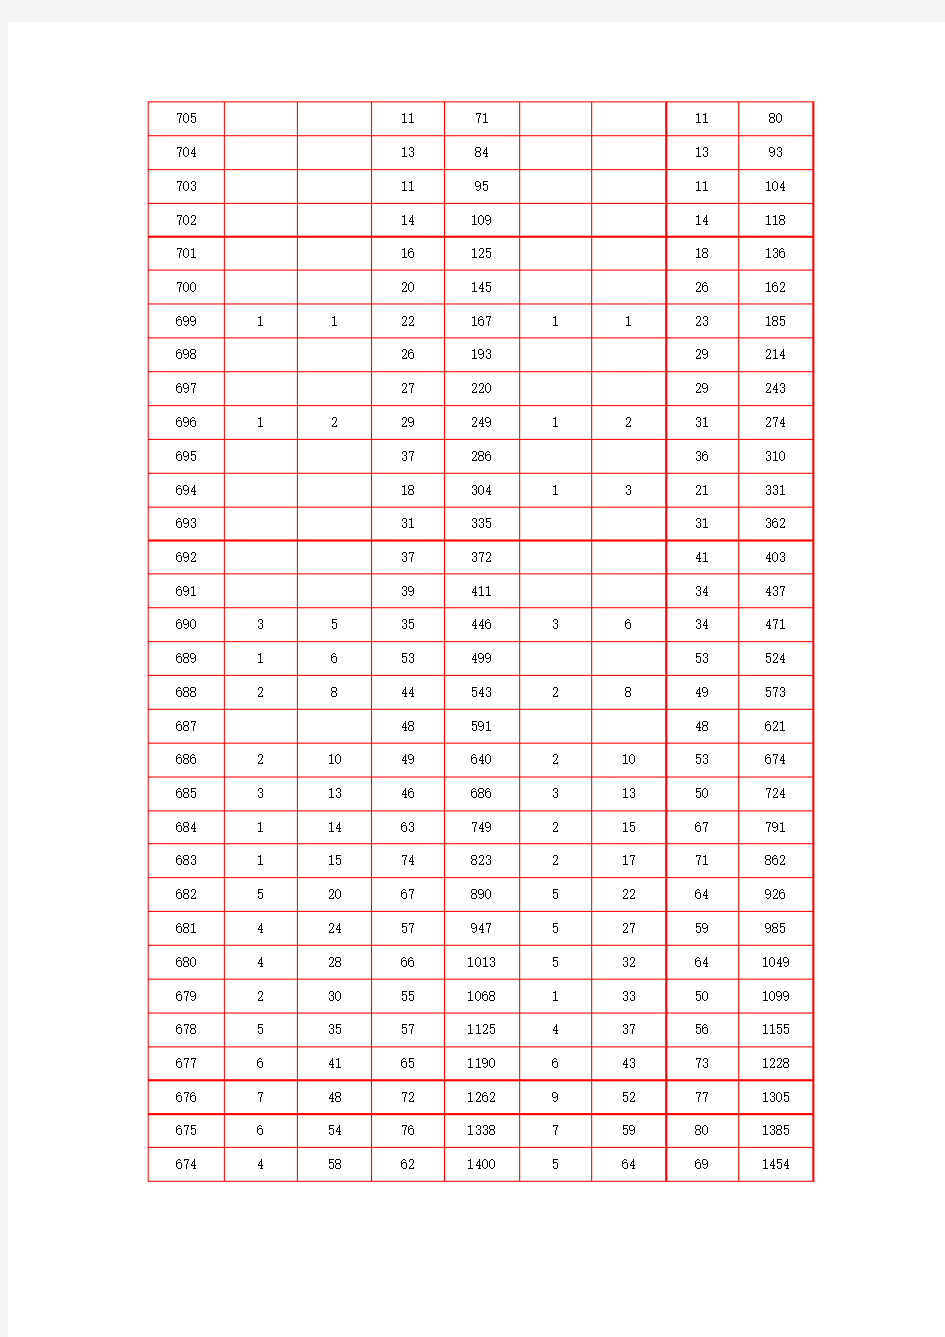 2015年北京高考一分段排名(官方)